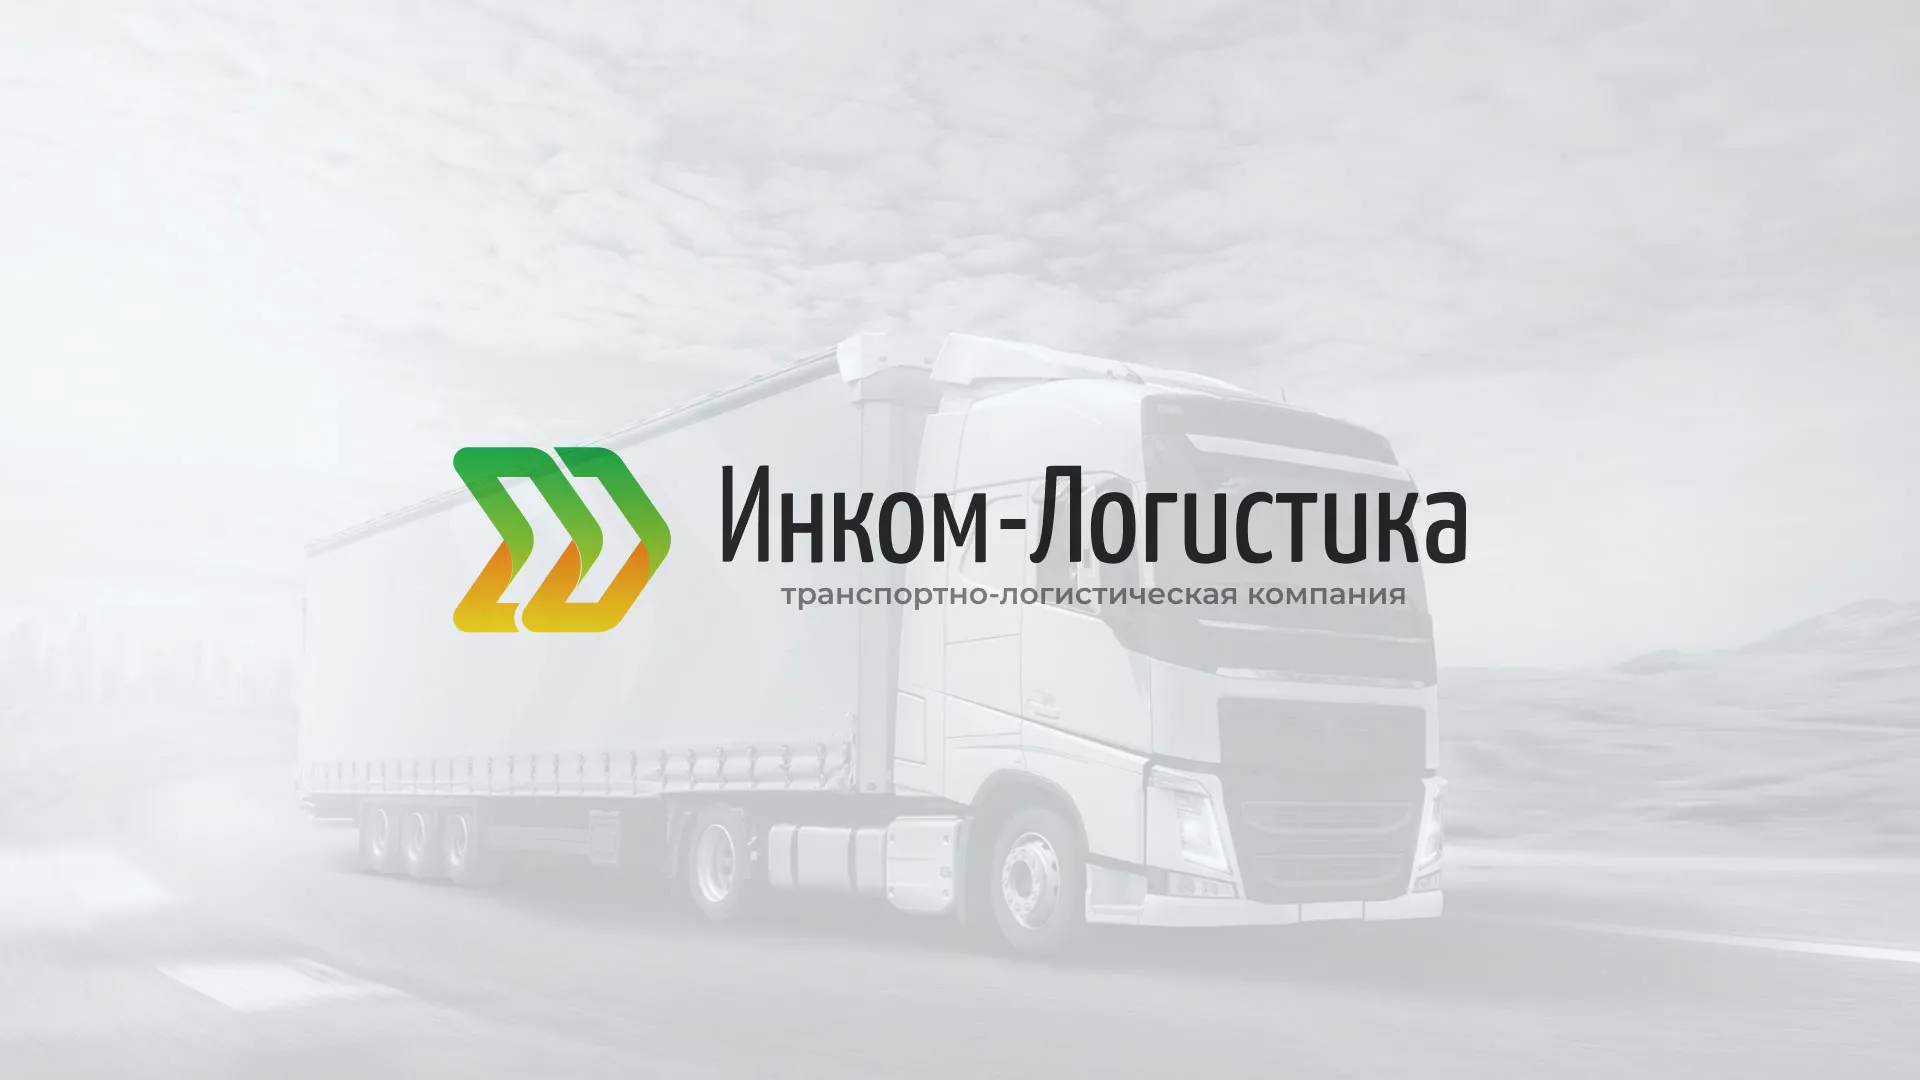 Разработка логотипа и сайта компании «Инком-Логистика» в Верхотурье